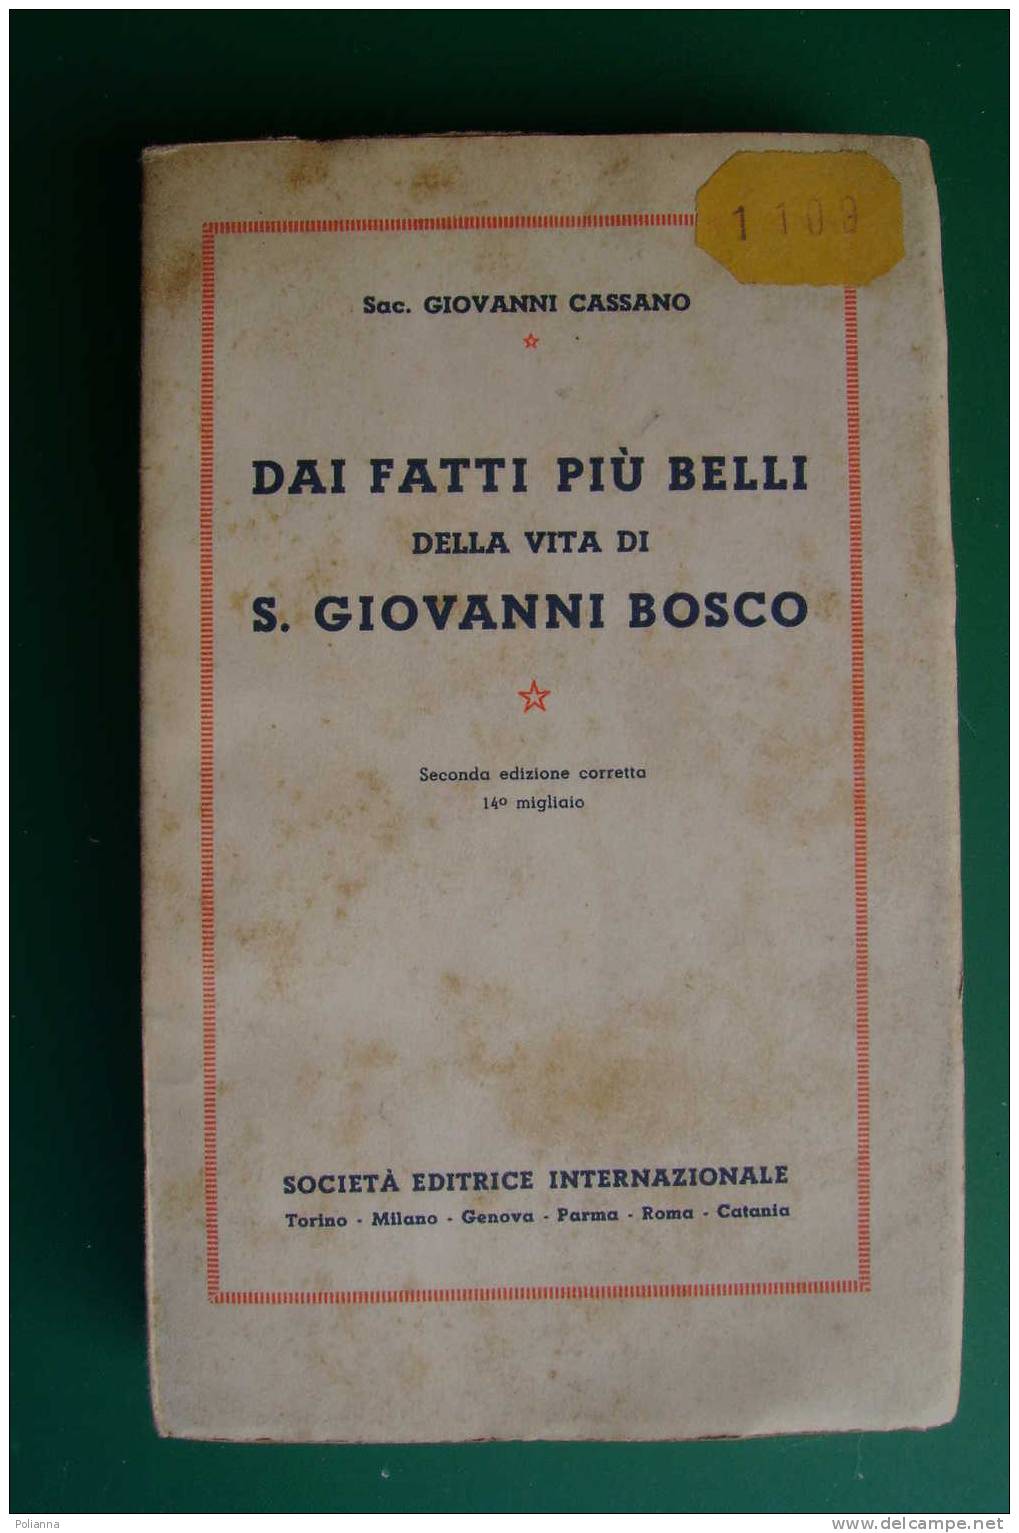 PDD/29 Sac. Giovanni Cassano DAI FATTI PIU' BELLI Della Vita Di S.GIOVANNI BOSCO S.E.I. 1934 - Religión